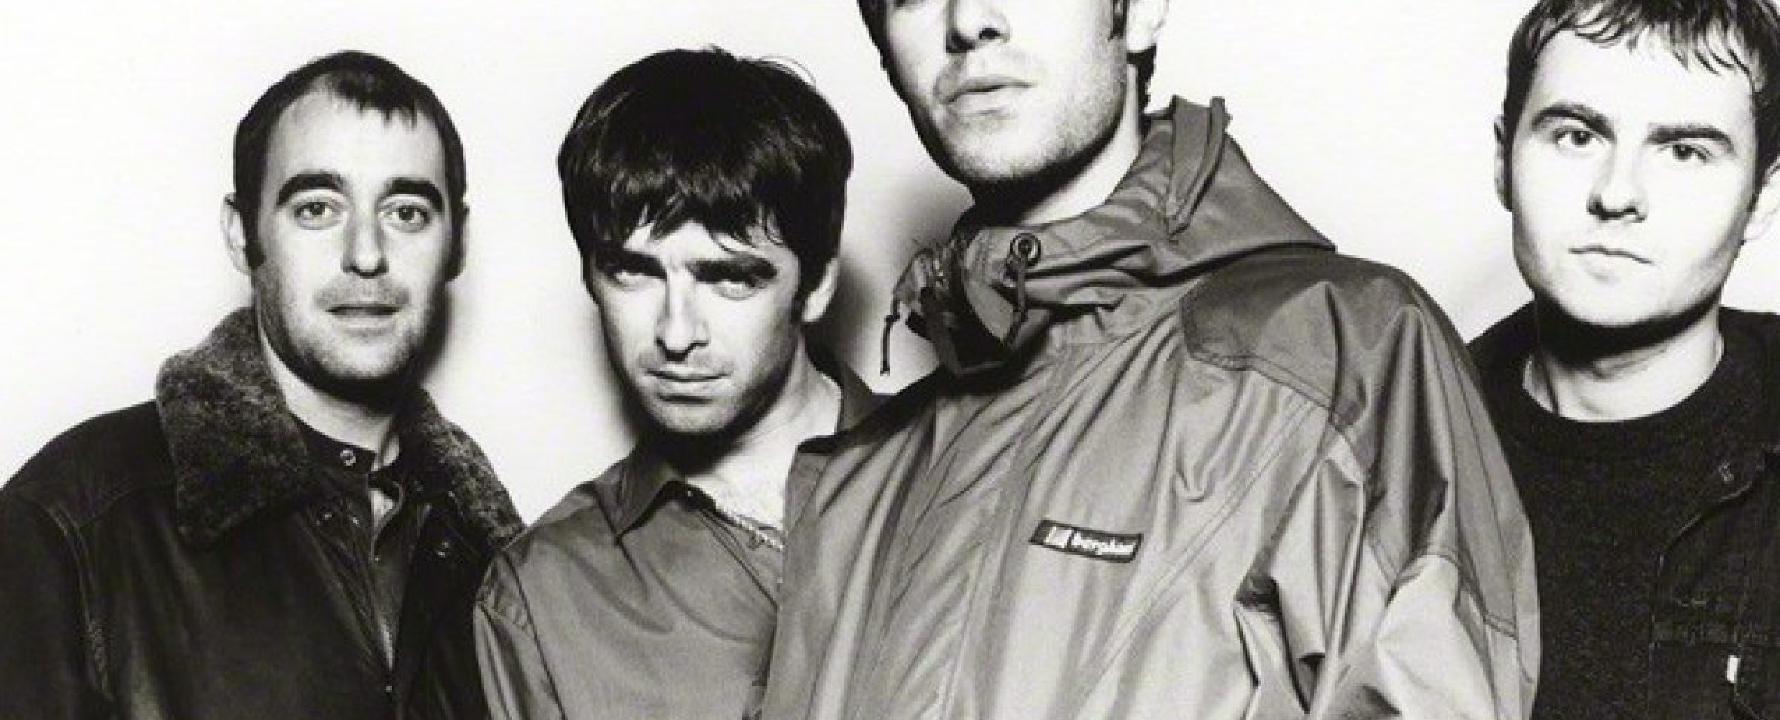 Fotografia promocional de Oasis.